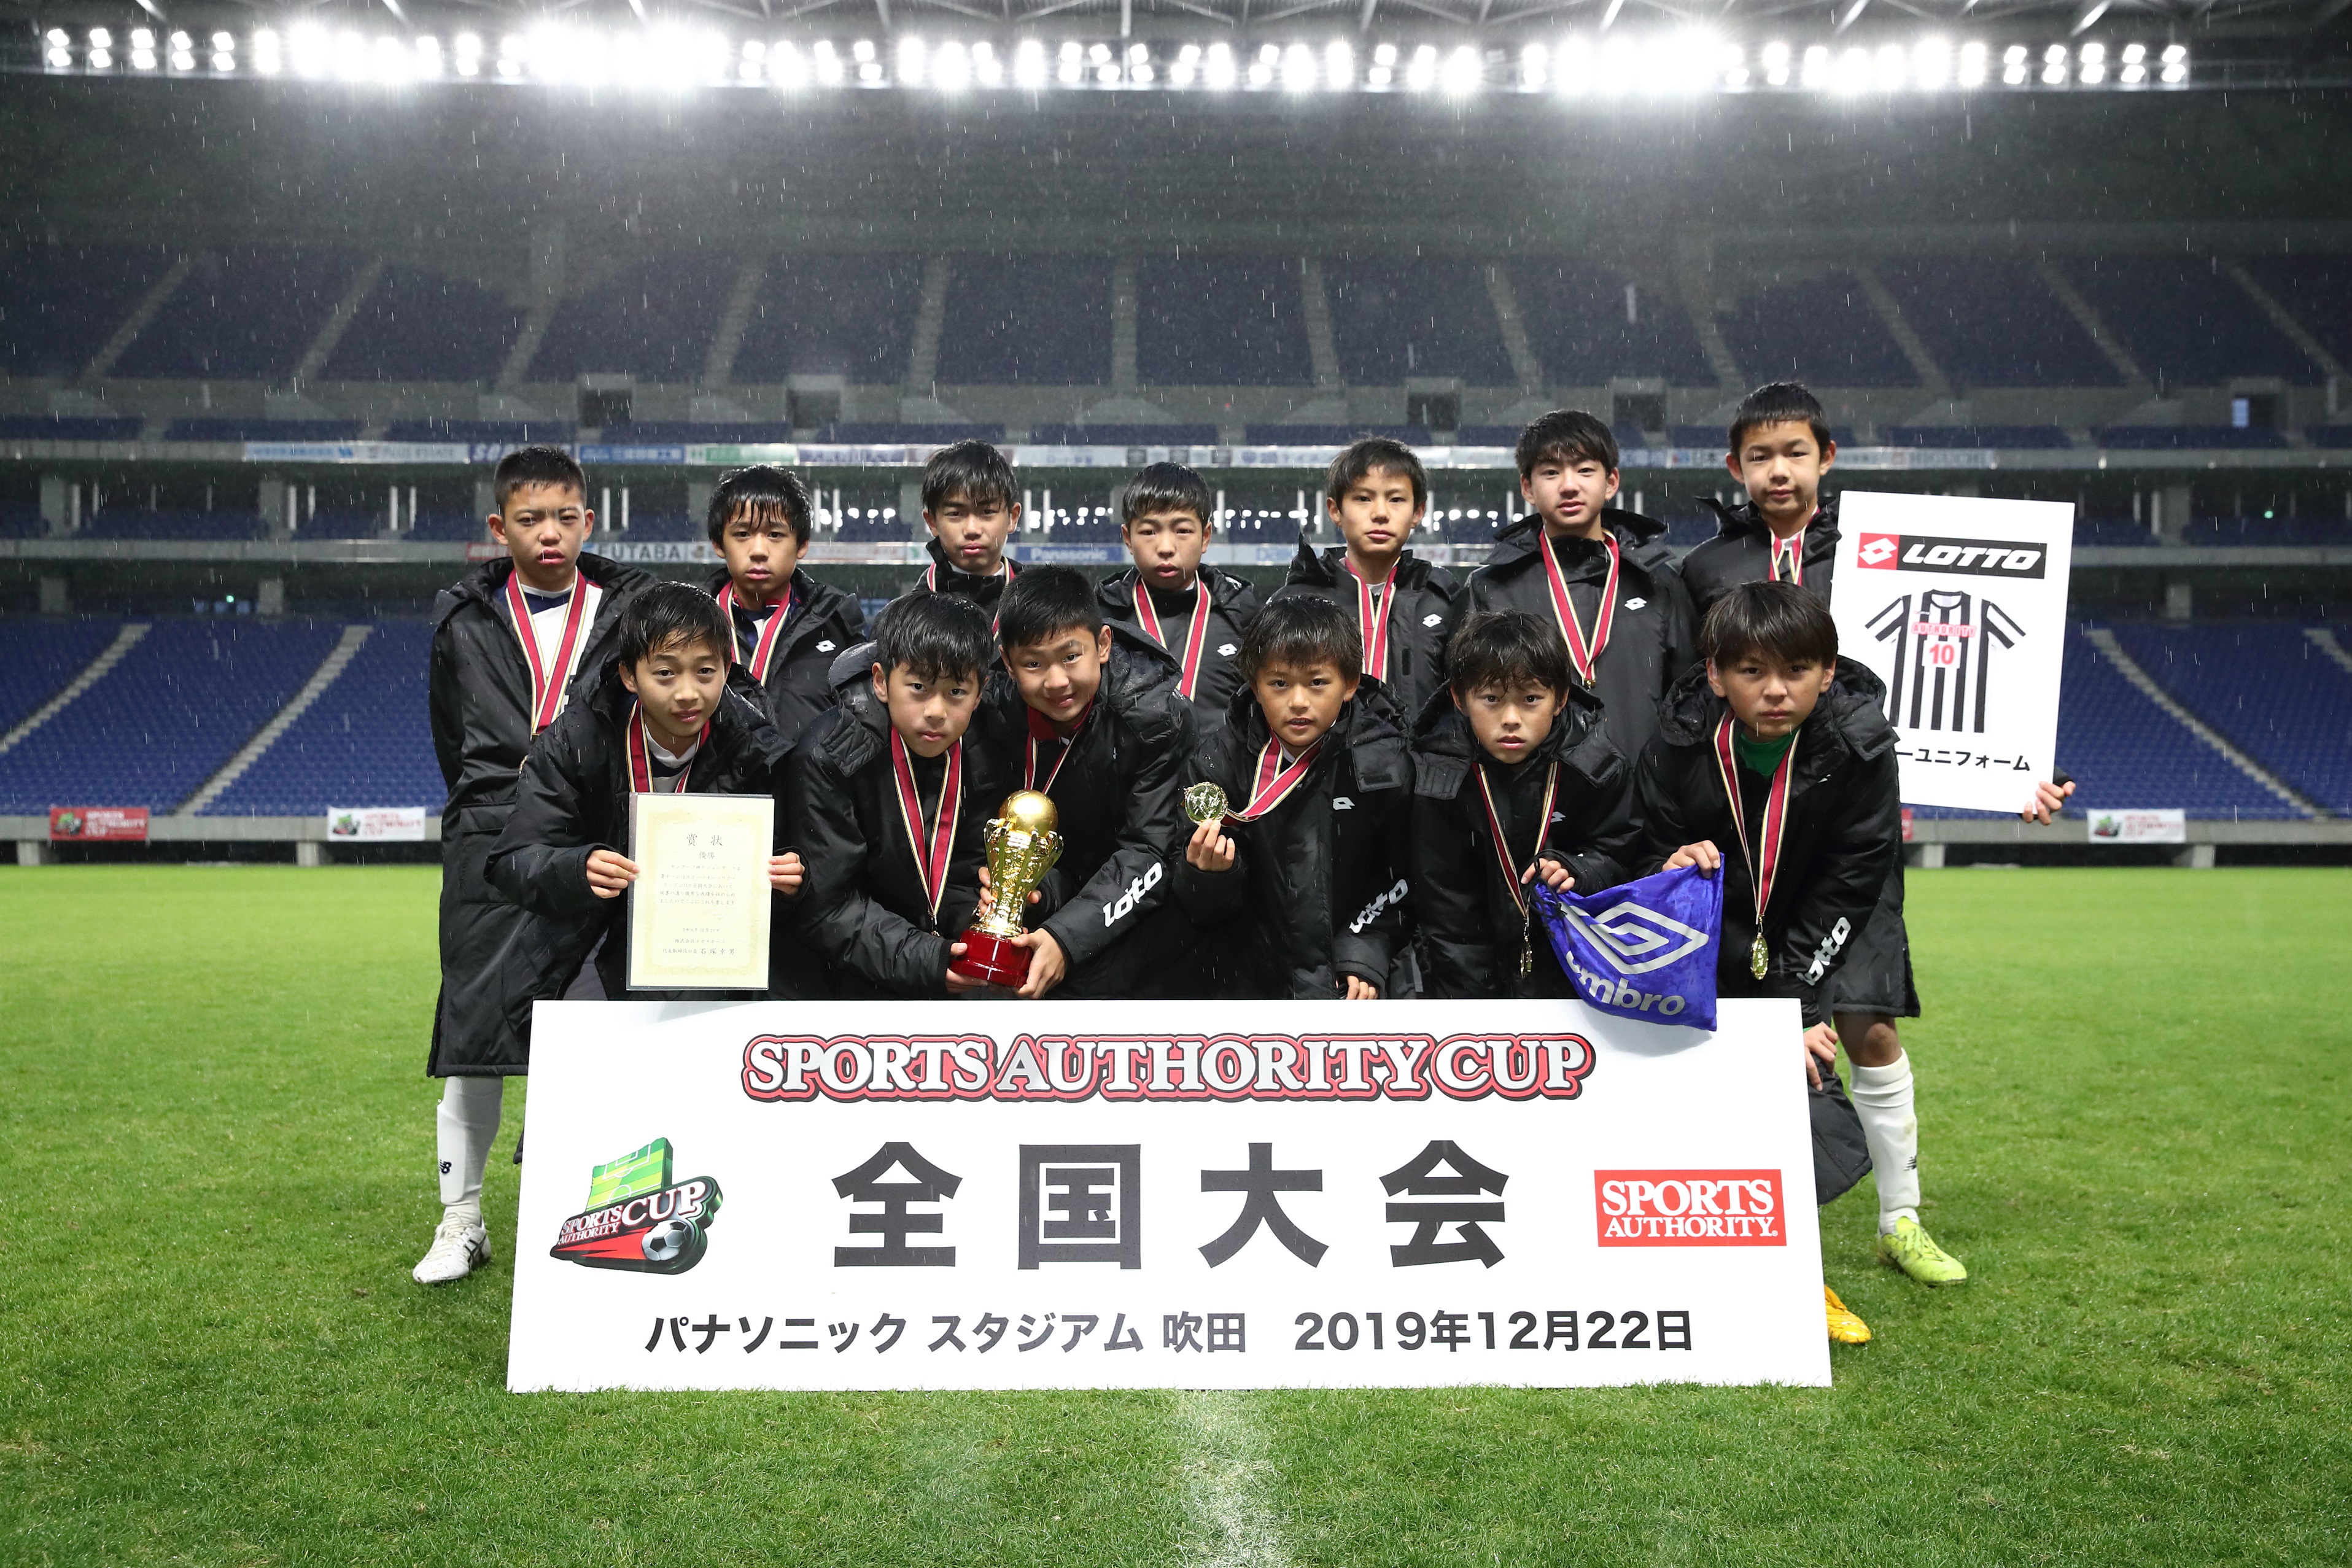 全国小学生サッカー 217チームの頂上が センアーノ神戸ジュニア に決定 第15回スポーツオーソリティカップ19全国大会 株式会社メガスポーツのプレスリリース